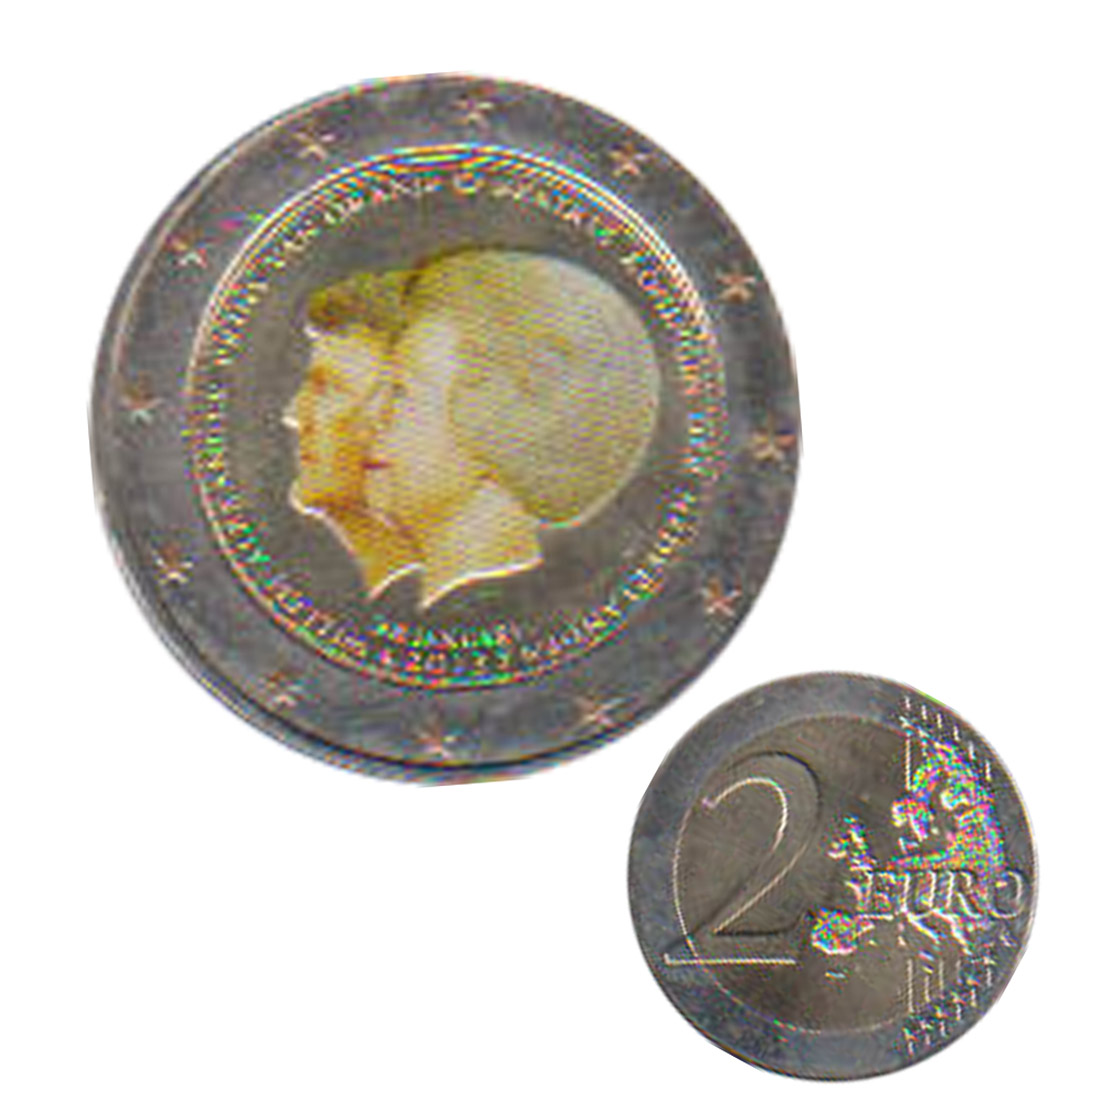  Niederlande 2-Euro-Sondermünze mit Farb-Disign *Thronwechsel* 2013   